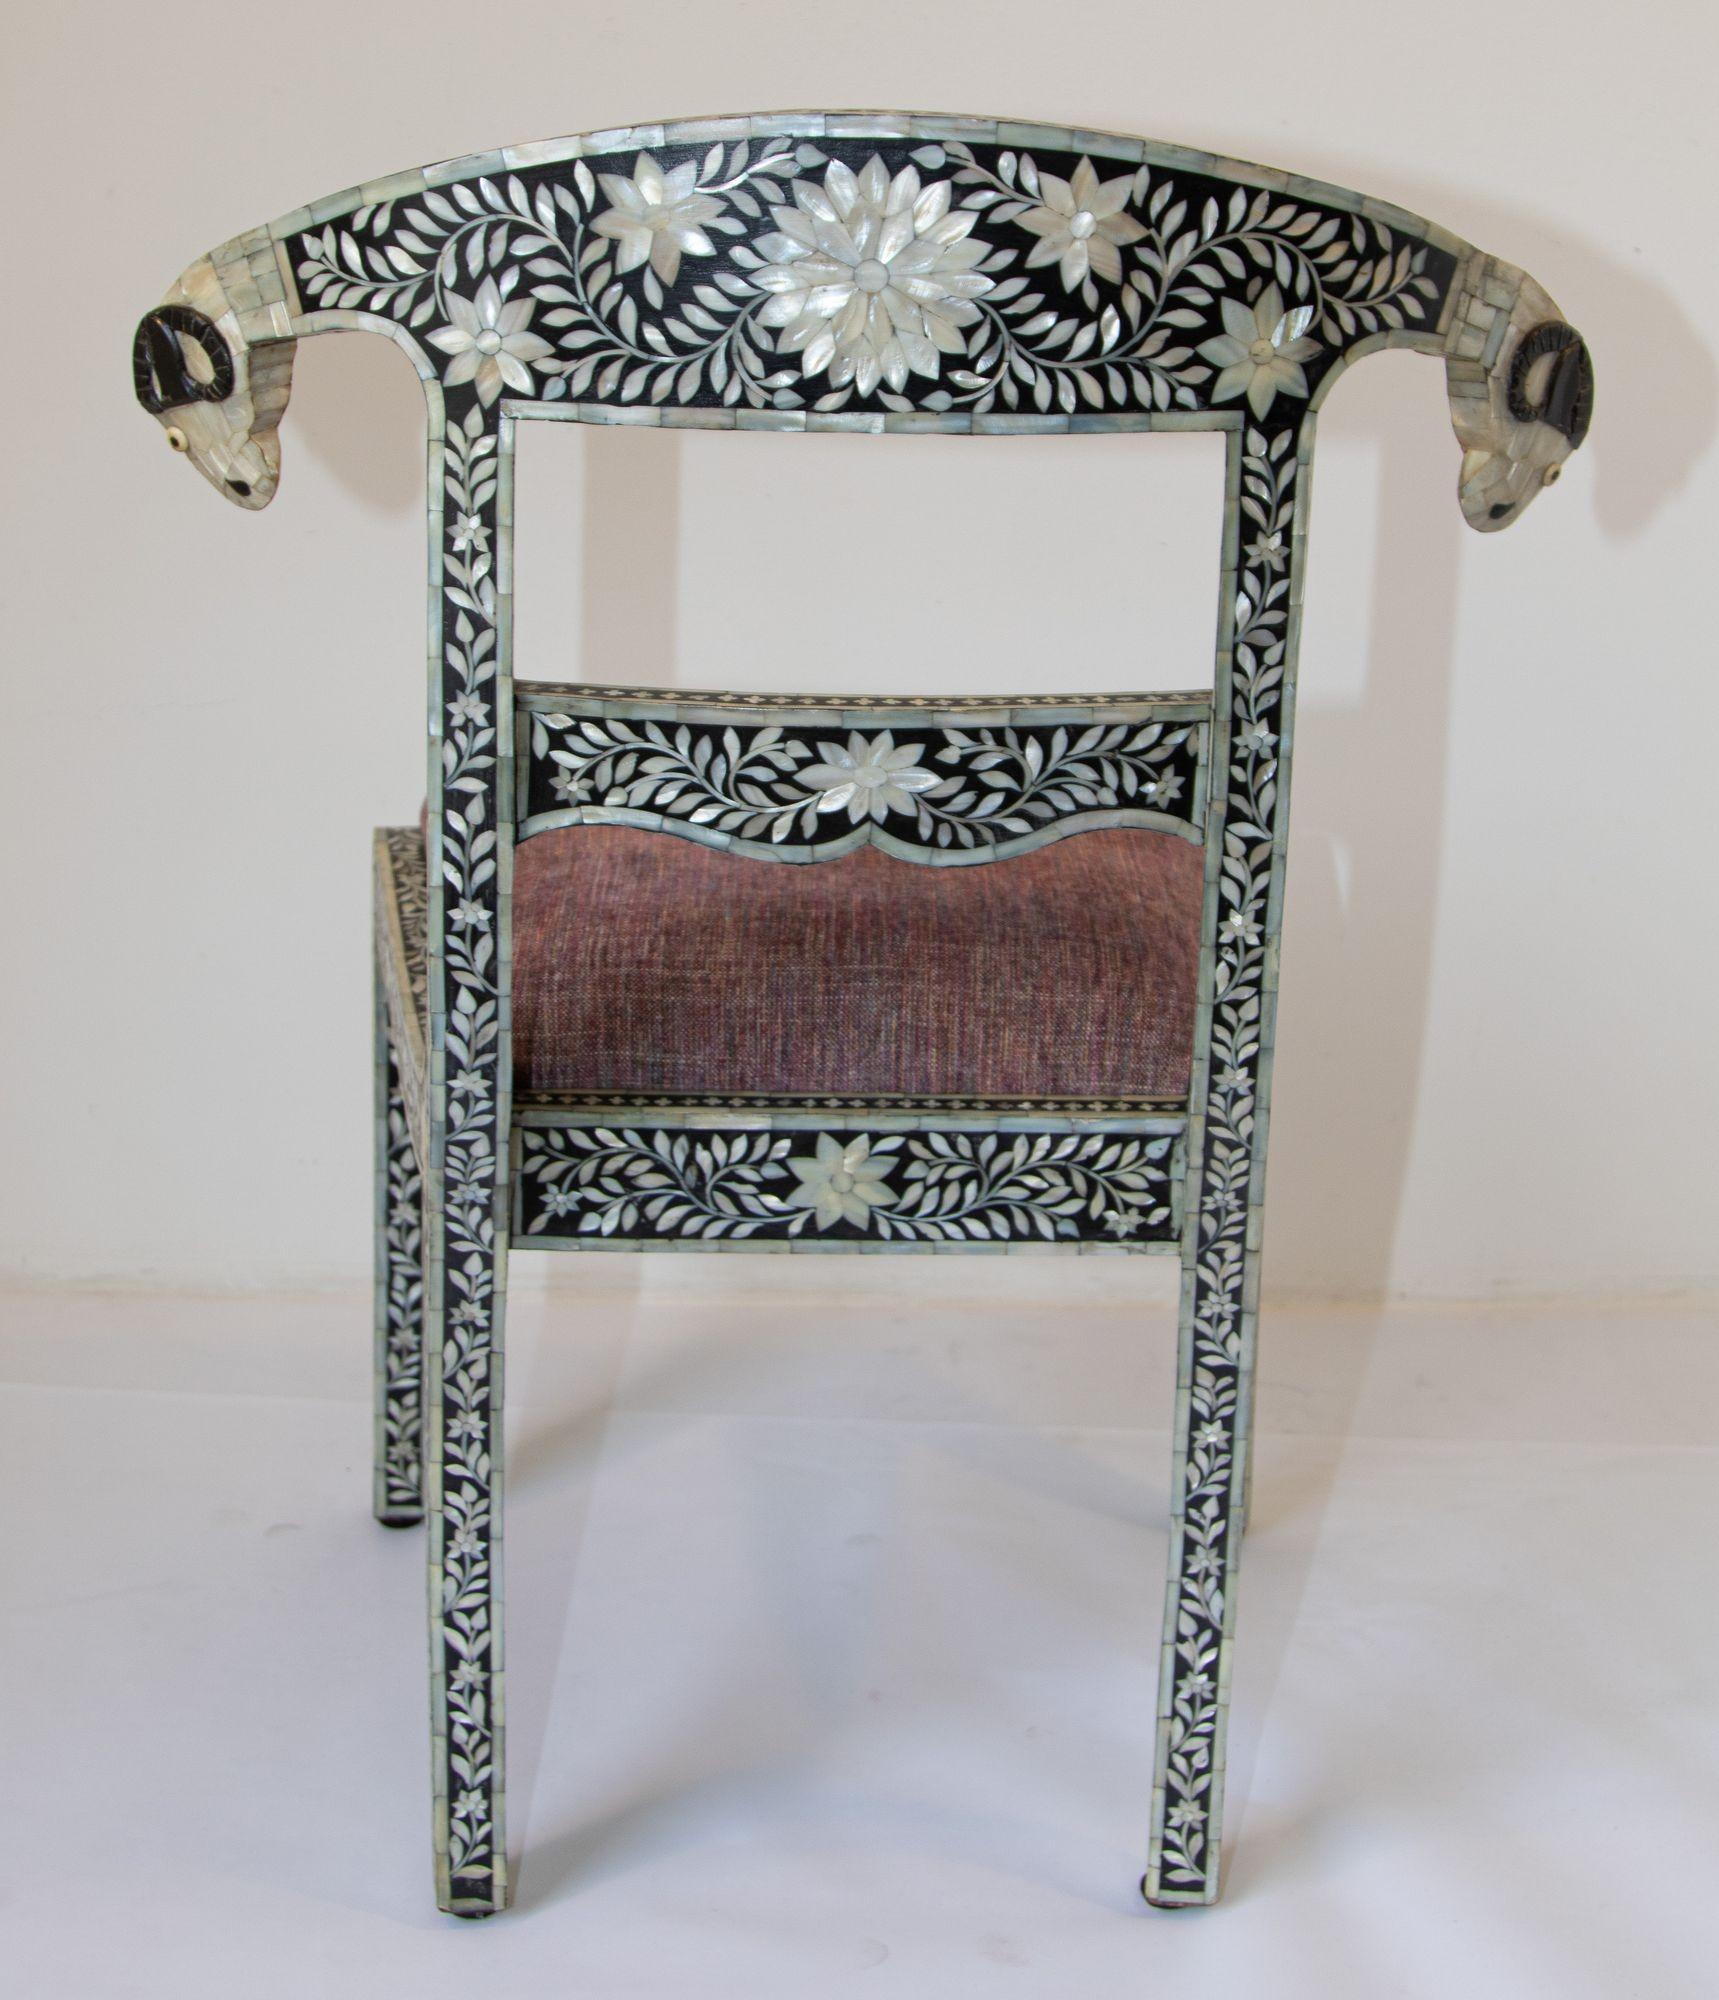 Antiker anglo-indischer Mughal-Stuhl mit Perlmutt-Intarsien und Widderkopf.
sehr sammelwürdig und selten zu finden wir haben auch die Sessel zur Verfügung.
Anglo-indischer Mughal-Stuhl mit schwarzer und weißer Perlmutt- und Knochenintarsie und